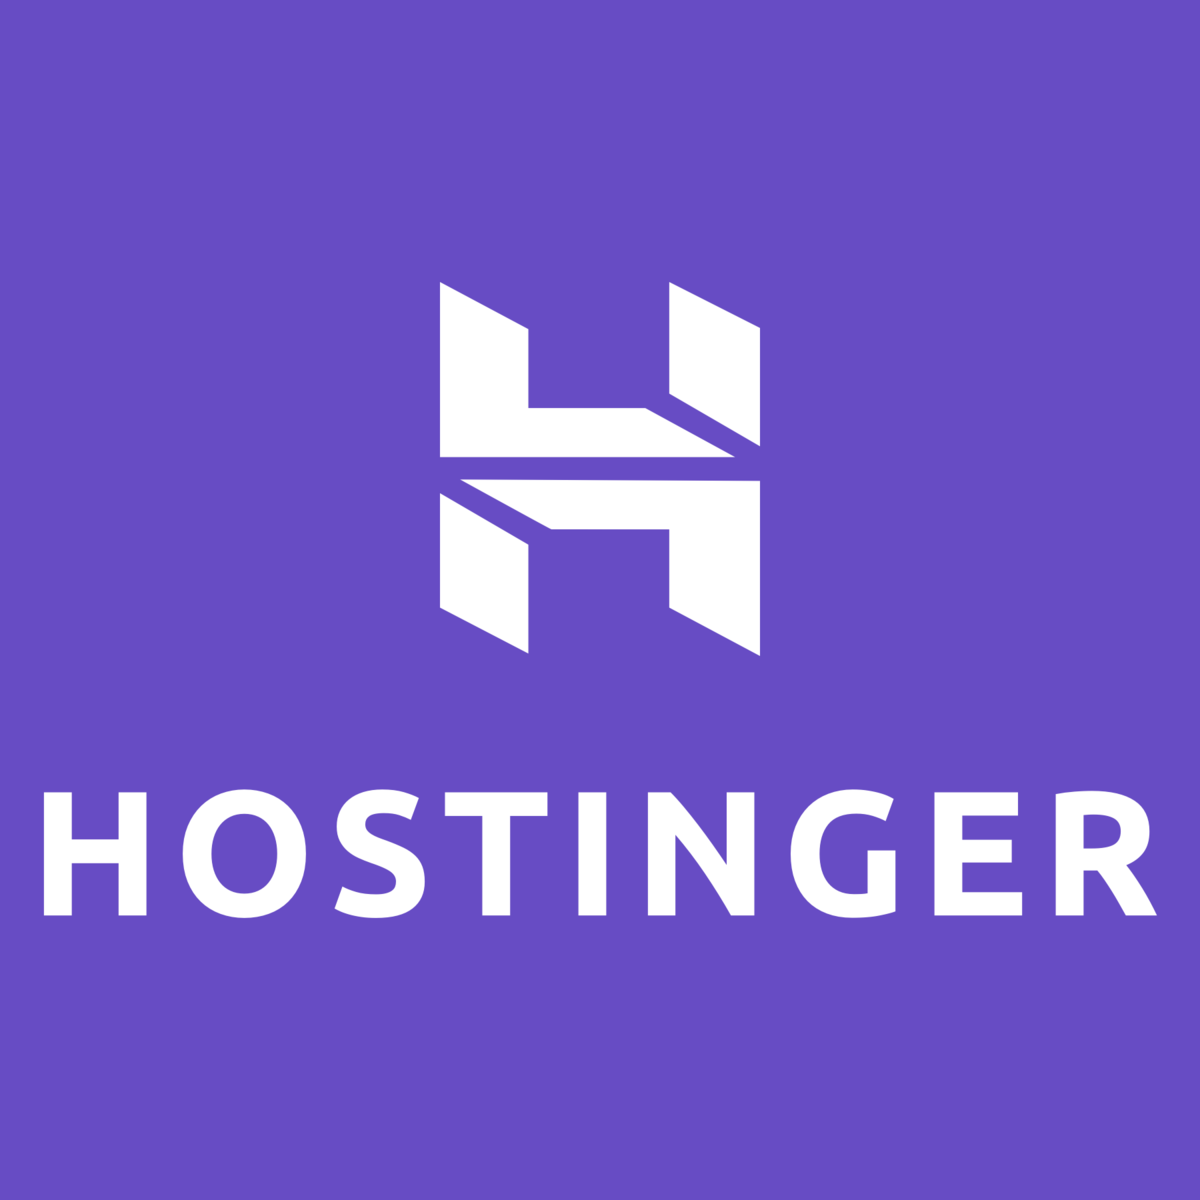 Hostinger Hosting Service